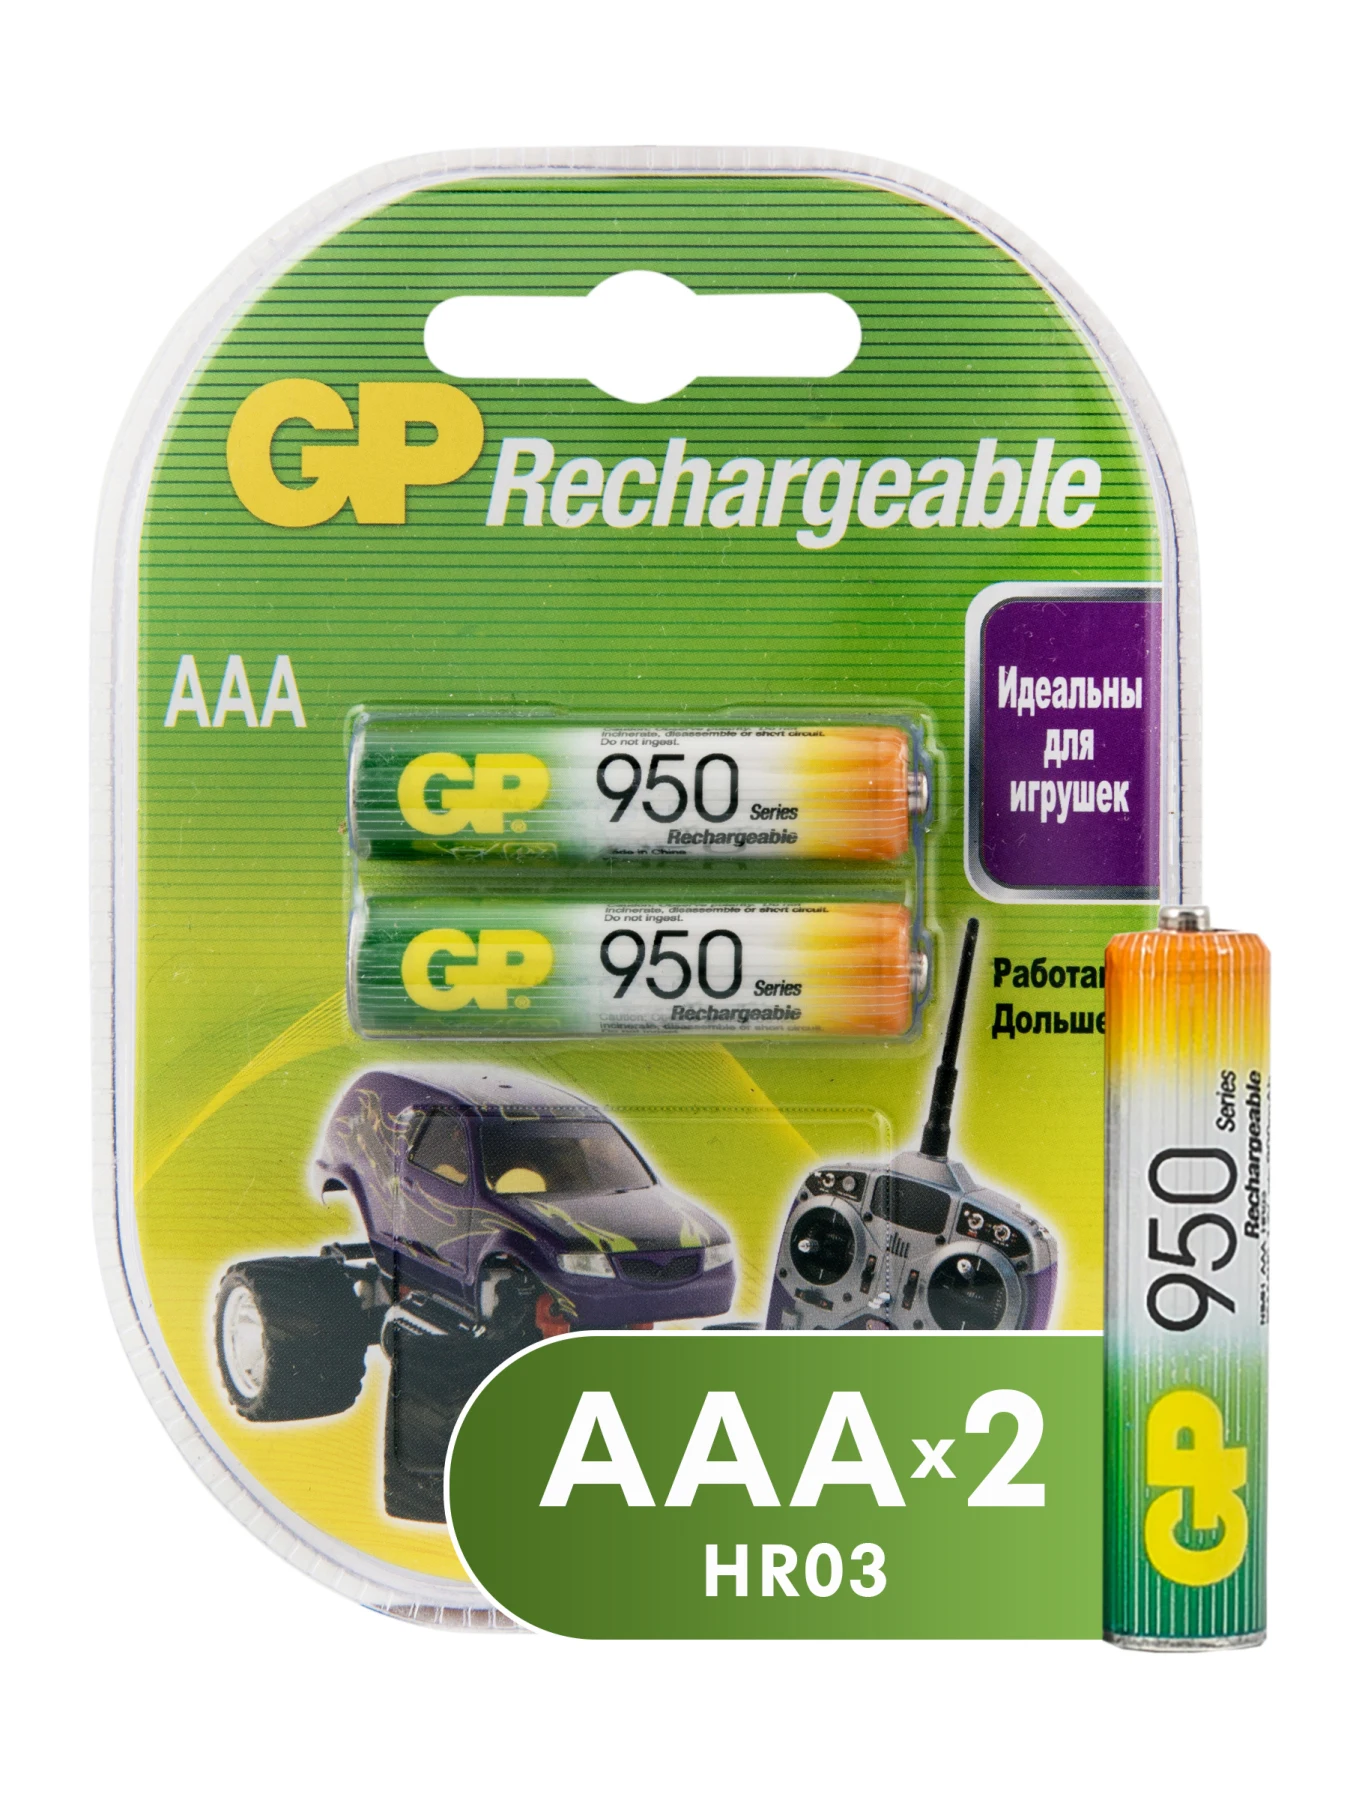 Комплект аккумуляторов GP АAА (HR03) для детских игрушек 2 шт 950 мАч (GP 95AAAHC 2DECRC2) 1.2